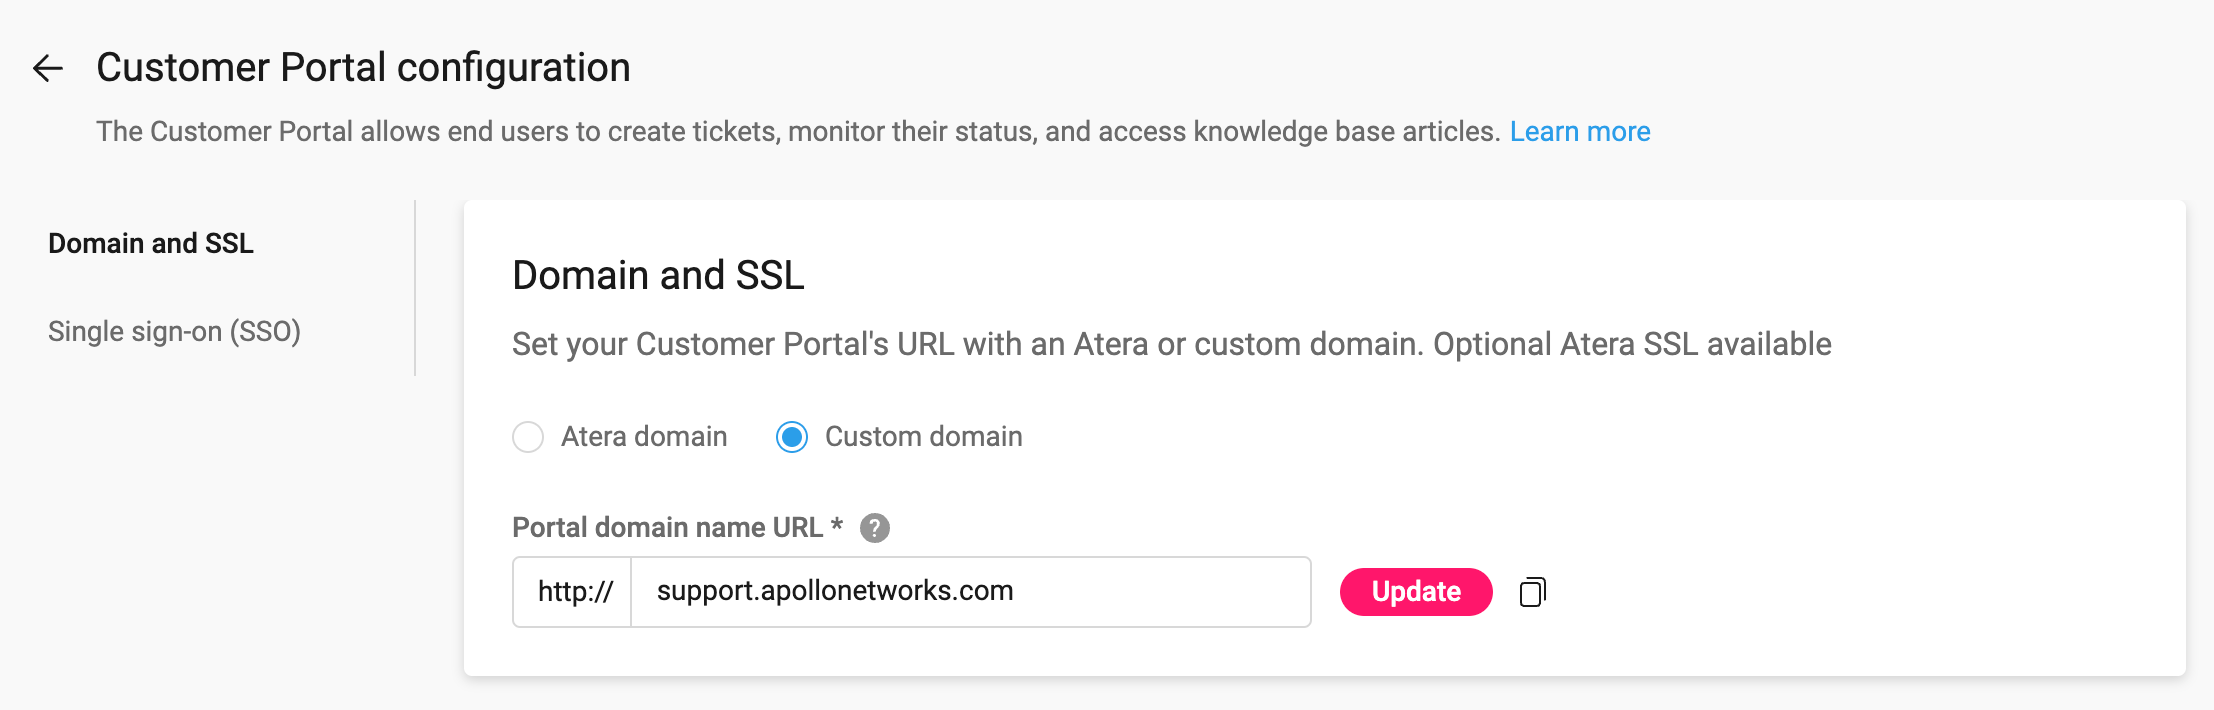 Portail Client - Domaine personnalisé SSL - MSP - FR.png